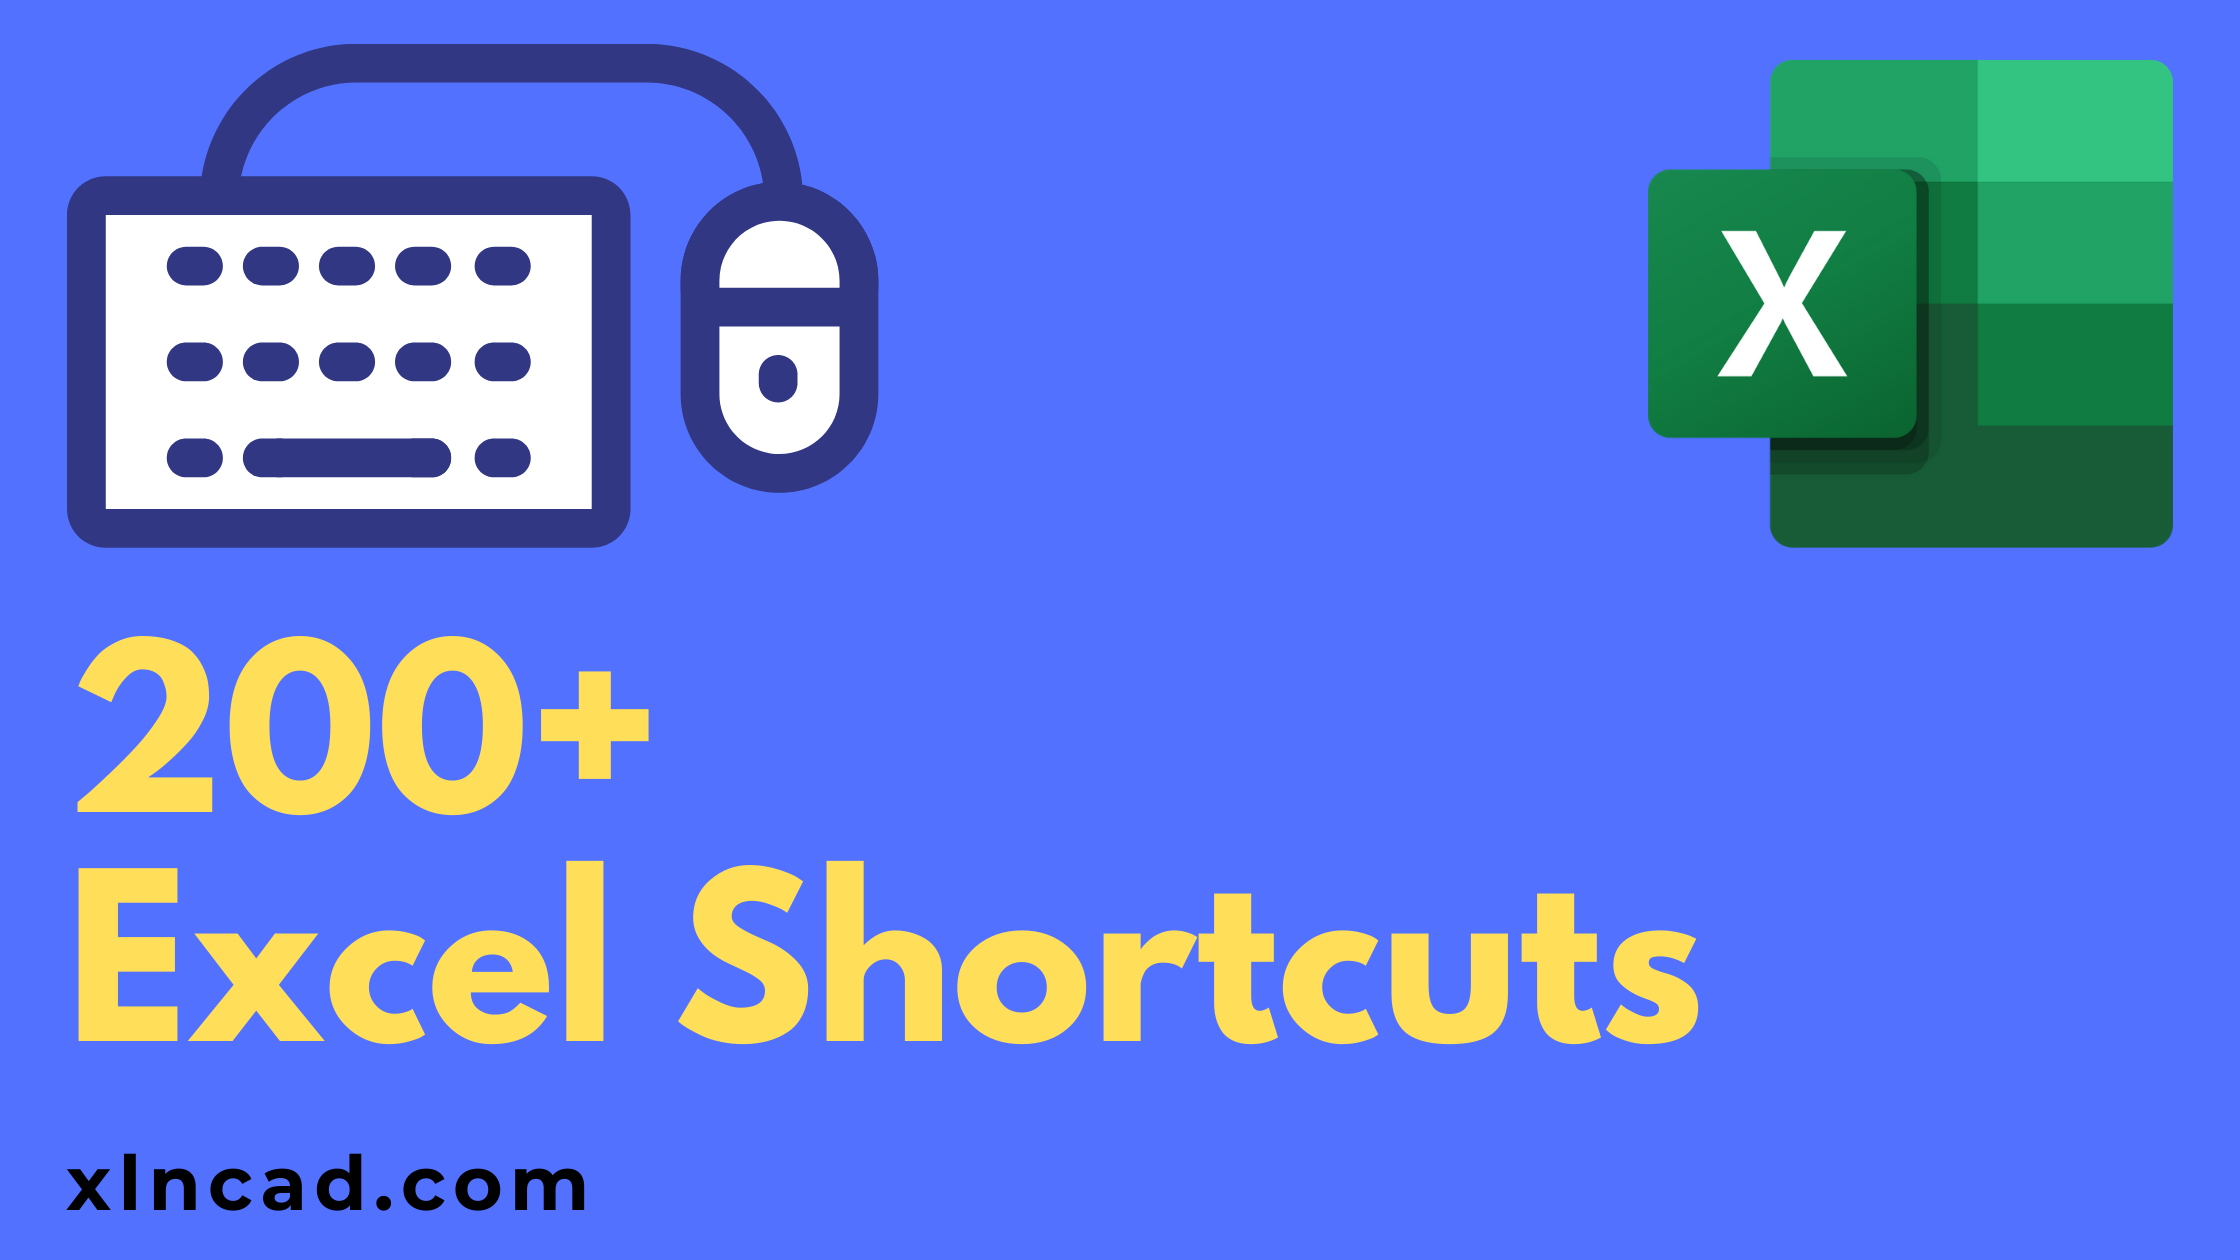 zoom shortcuts excel